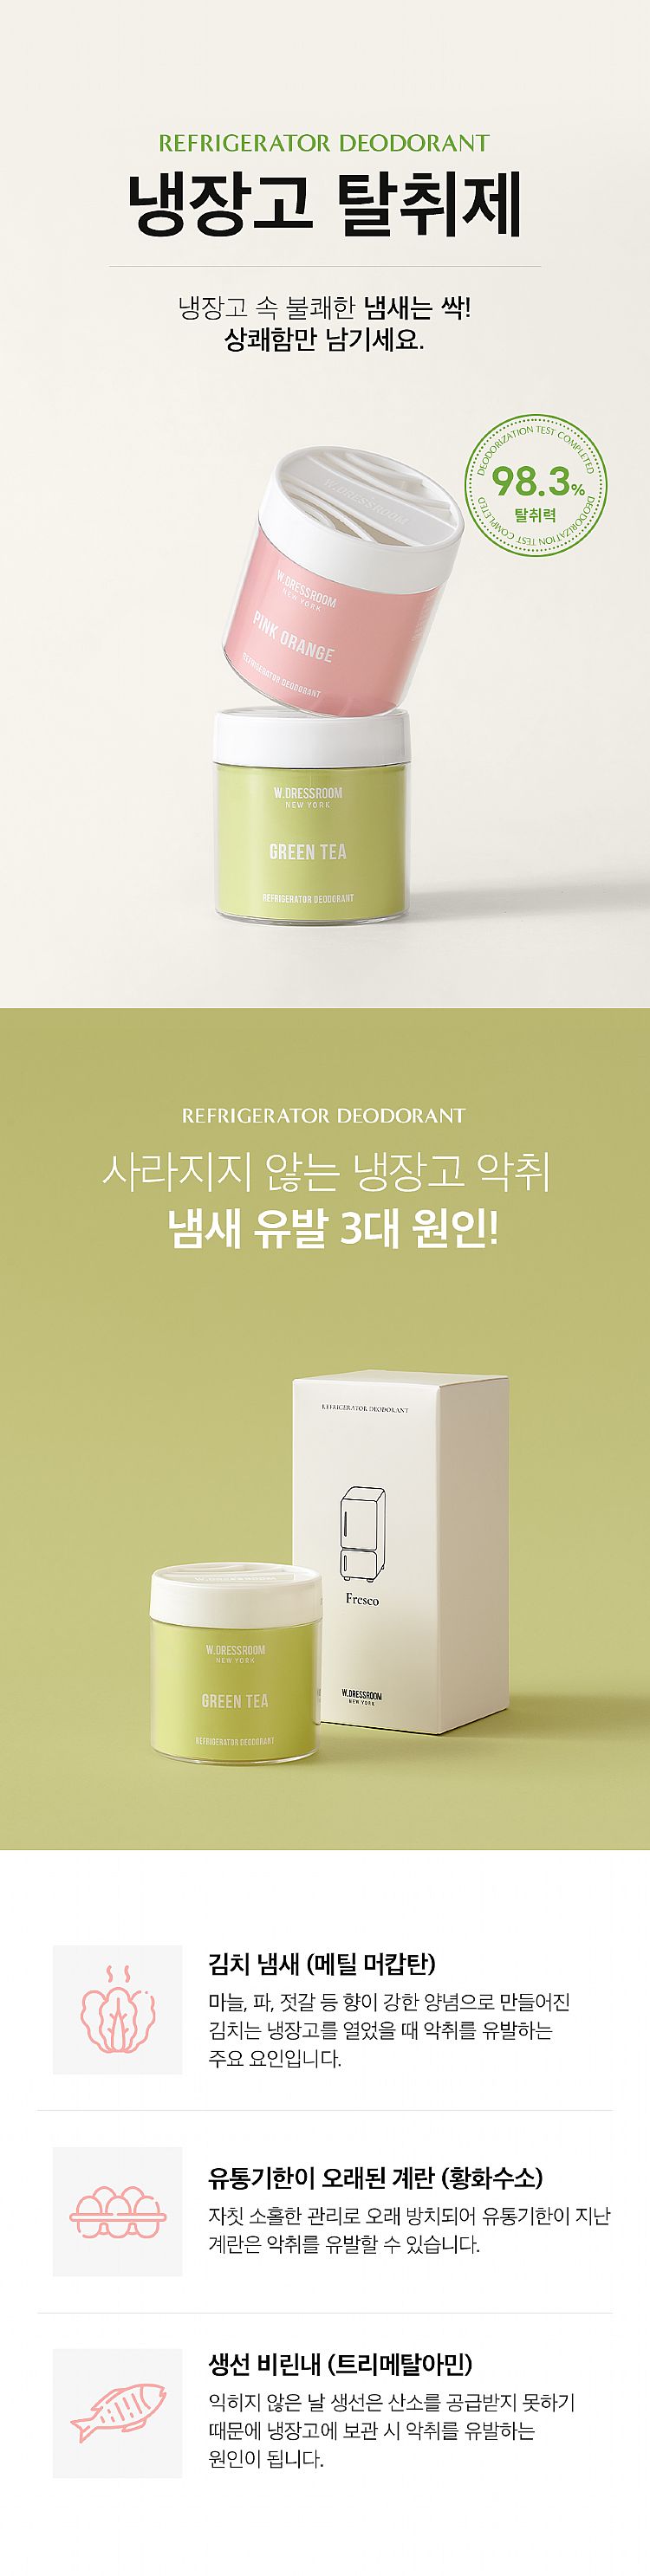 韓國 綠茶 韓國 柑橘 冰箱 除臭劑